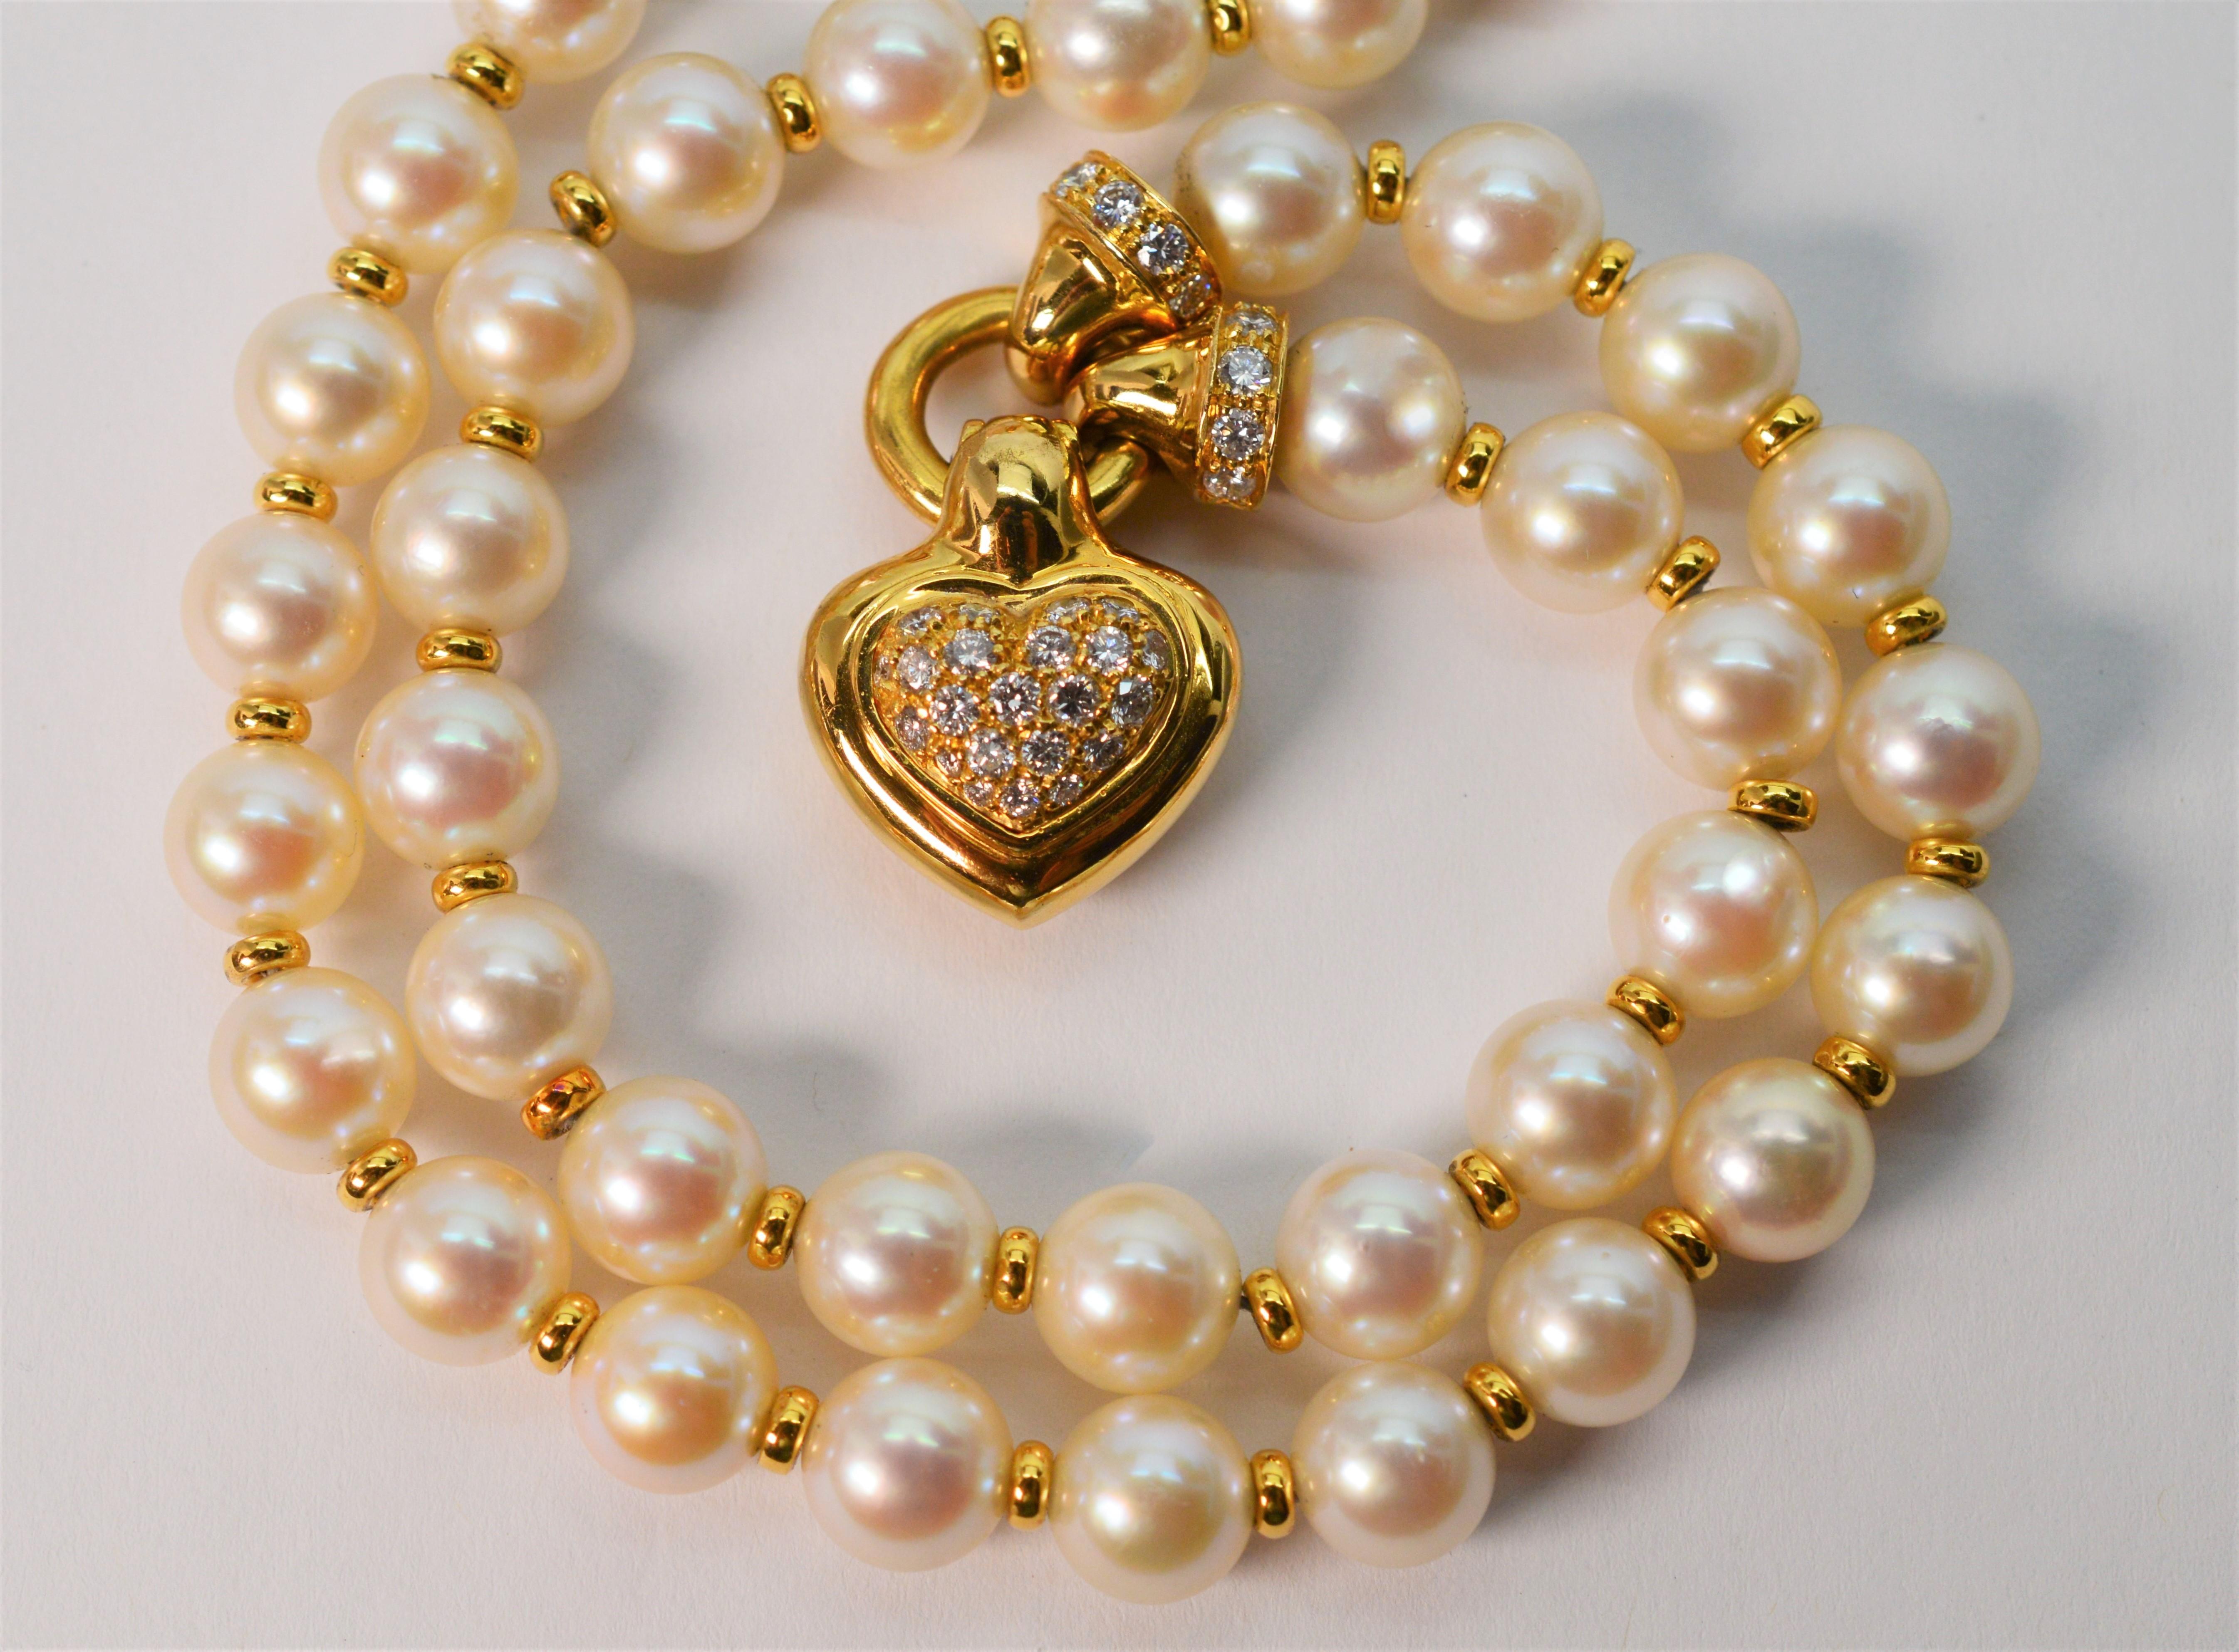 Le mariage d'éléments classiques crée une polyvalence pour ce ravissant collier pendentif à breloque cœur en perles et diamants. Parfait pour les tenues d'occasions spéciales, associé à vos boucles d'oreilles préférées, ou idéal pour un look glam